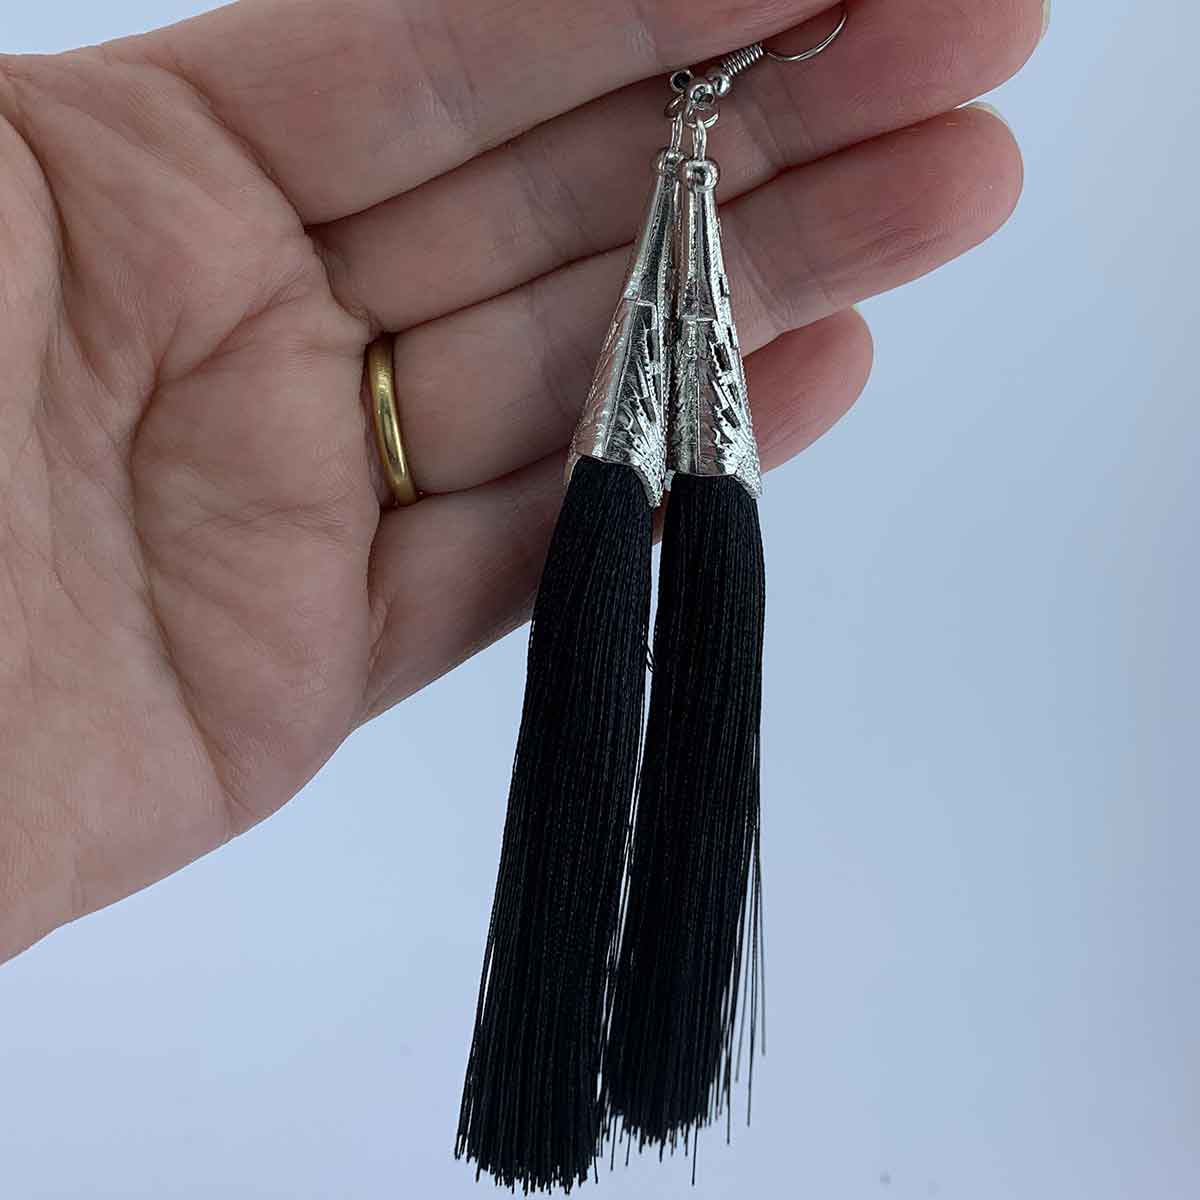 silk tassel earrings for women